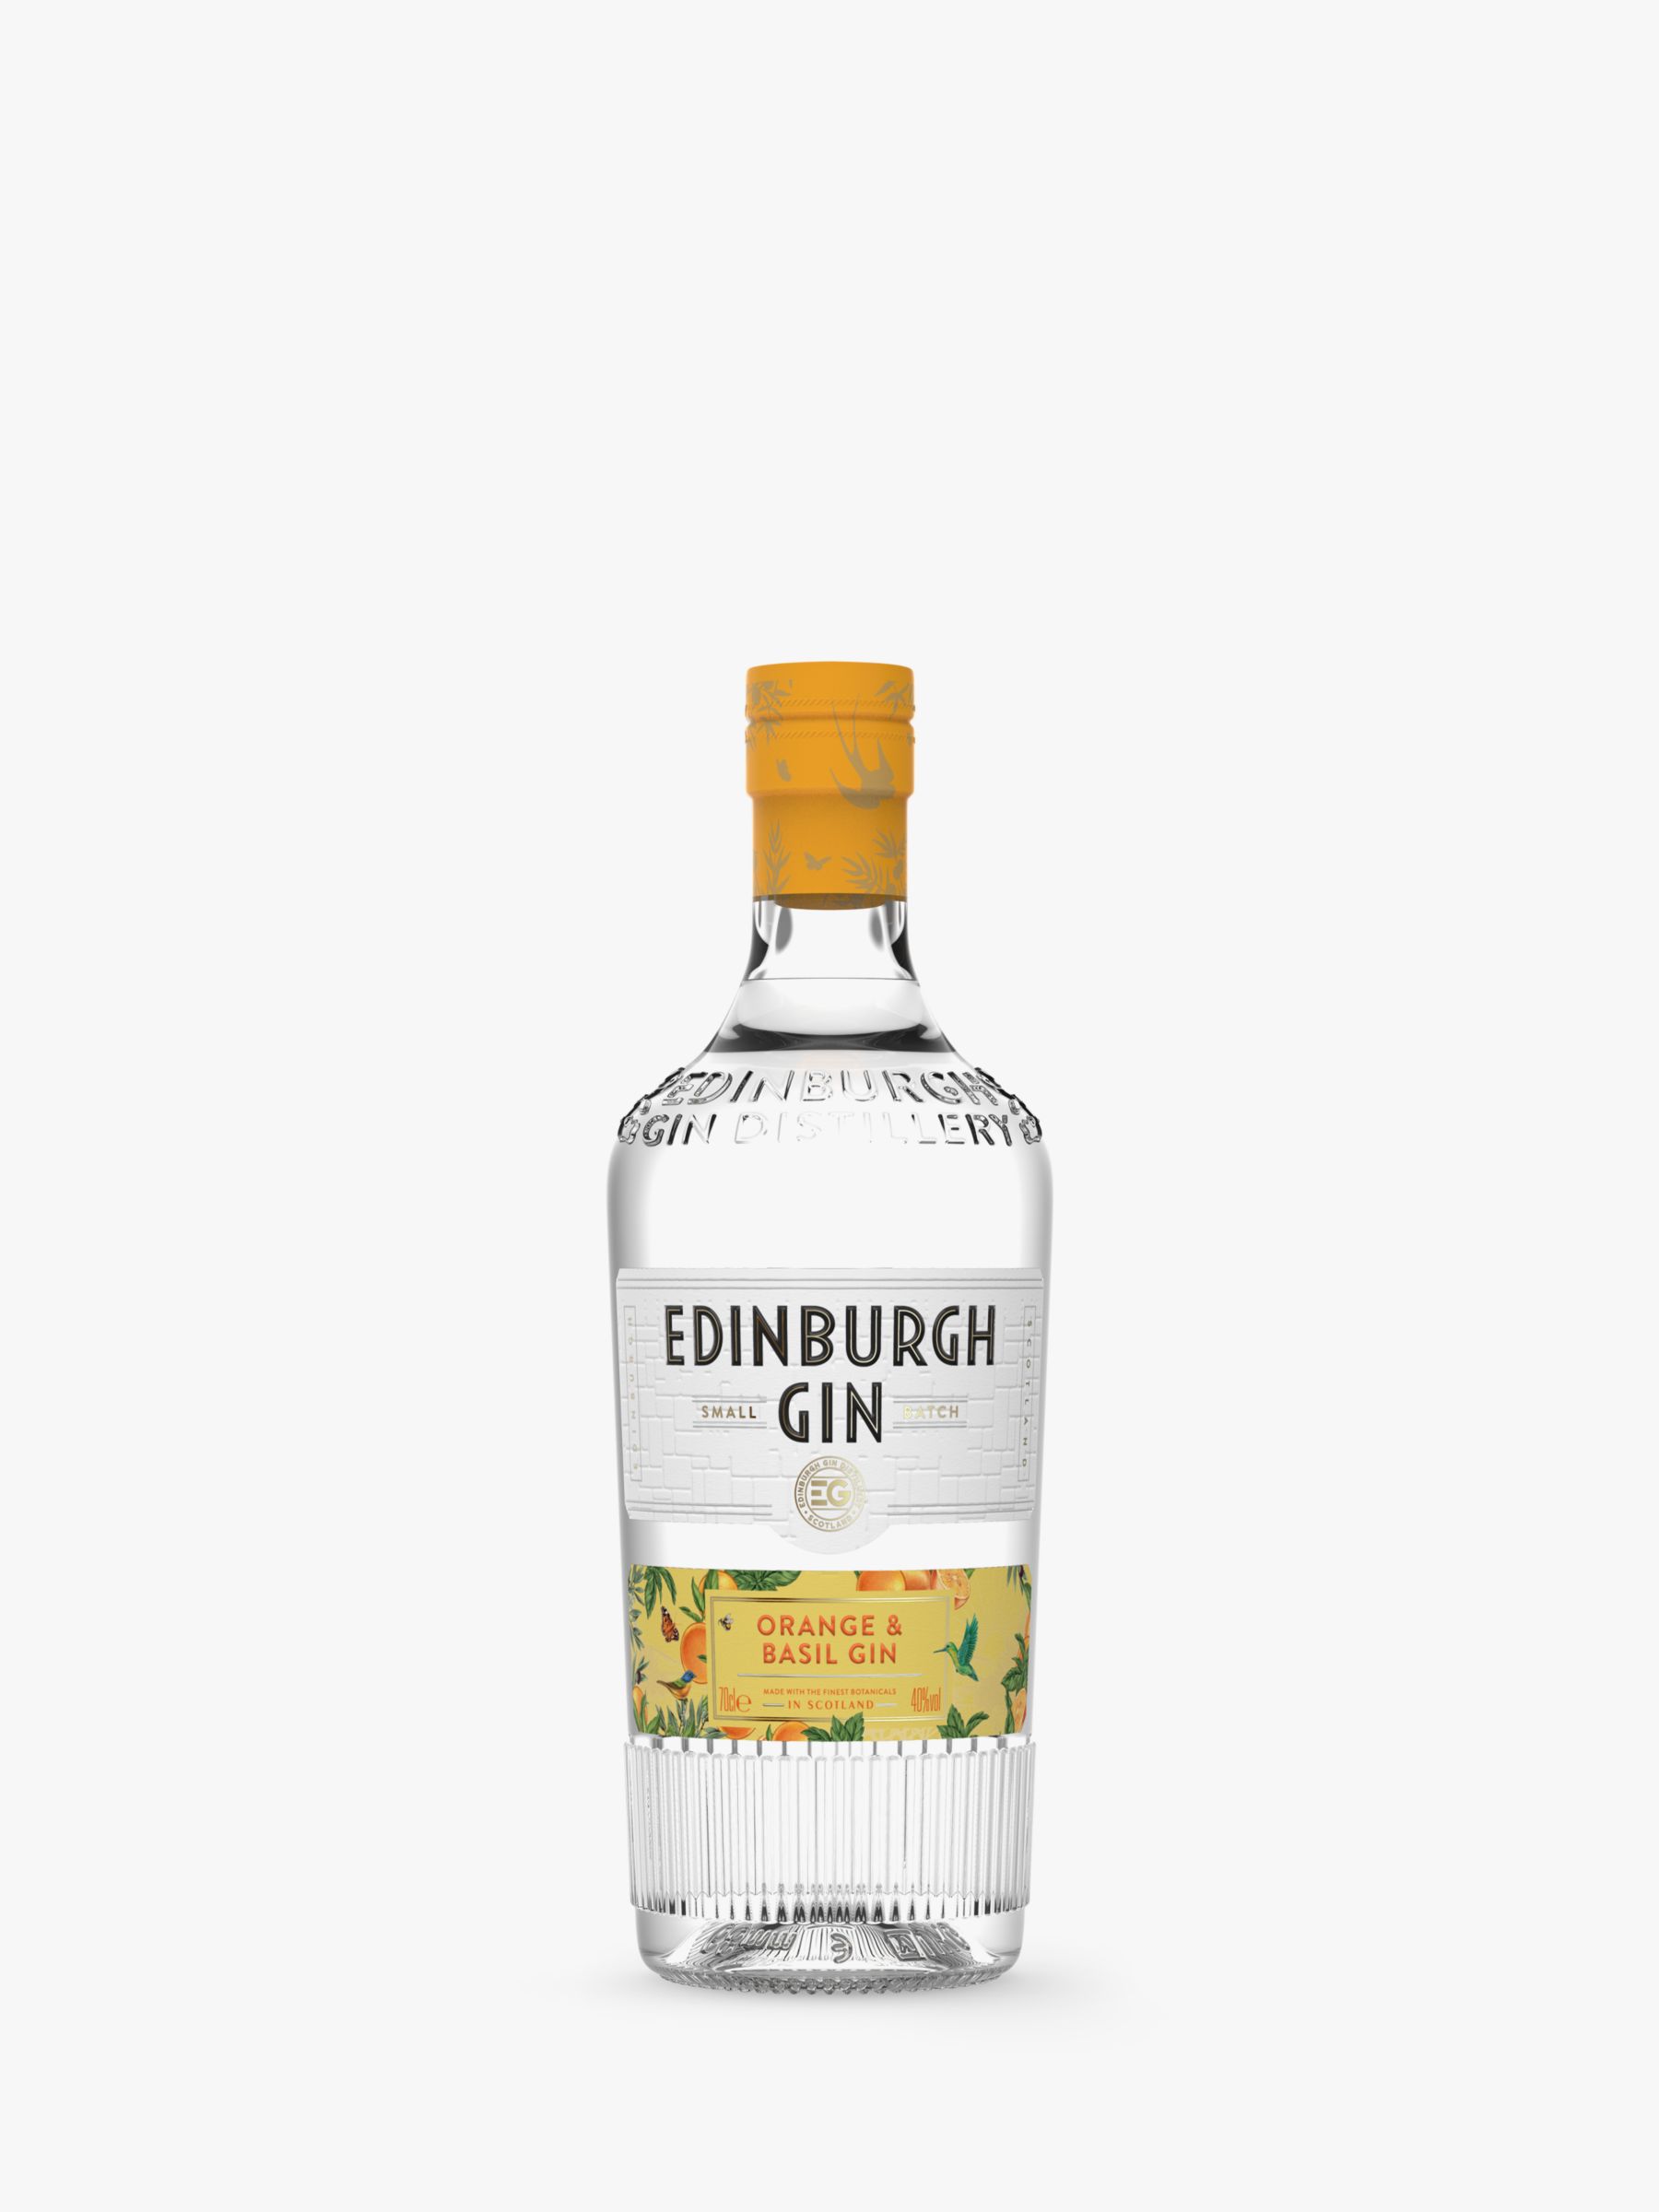 & Orange 70cl Basil Gin Edinburgh Gin,